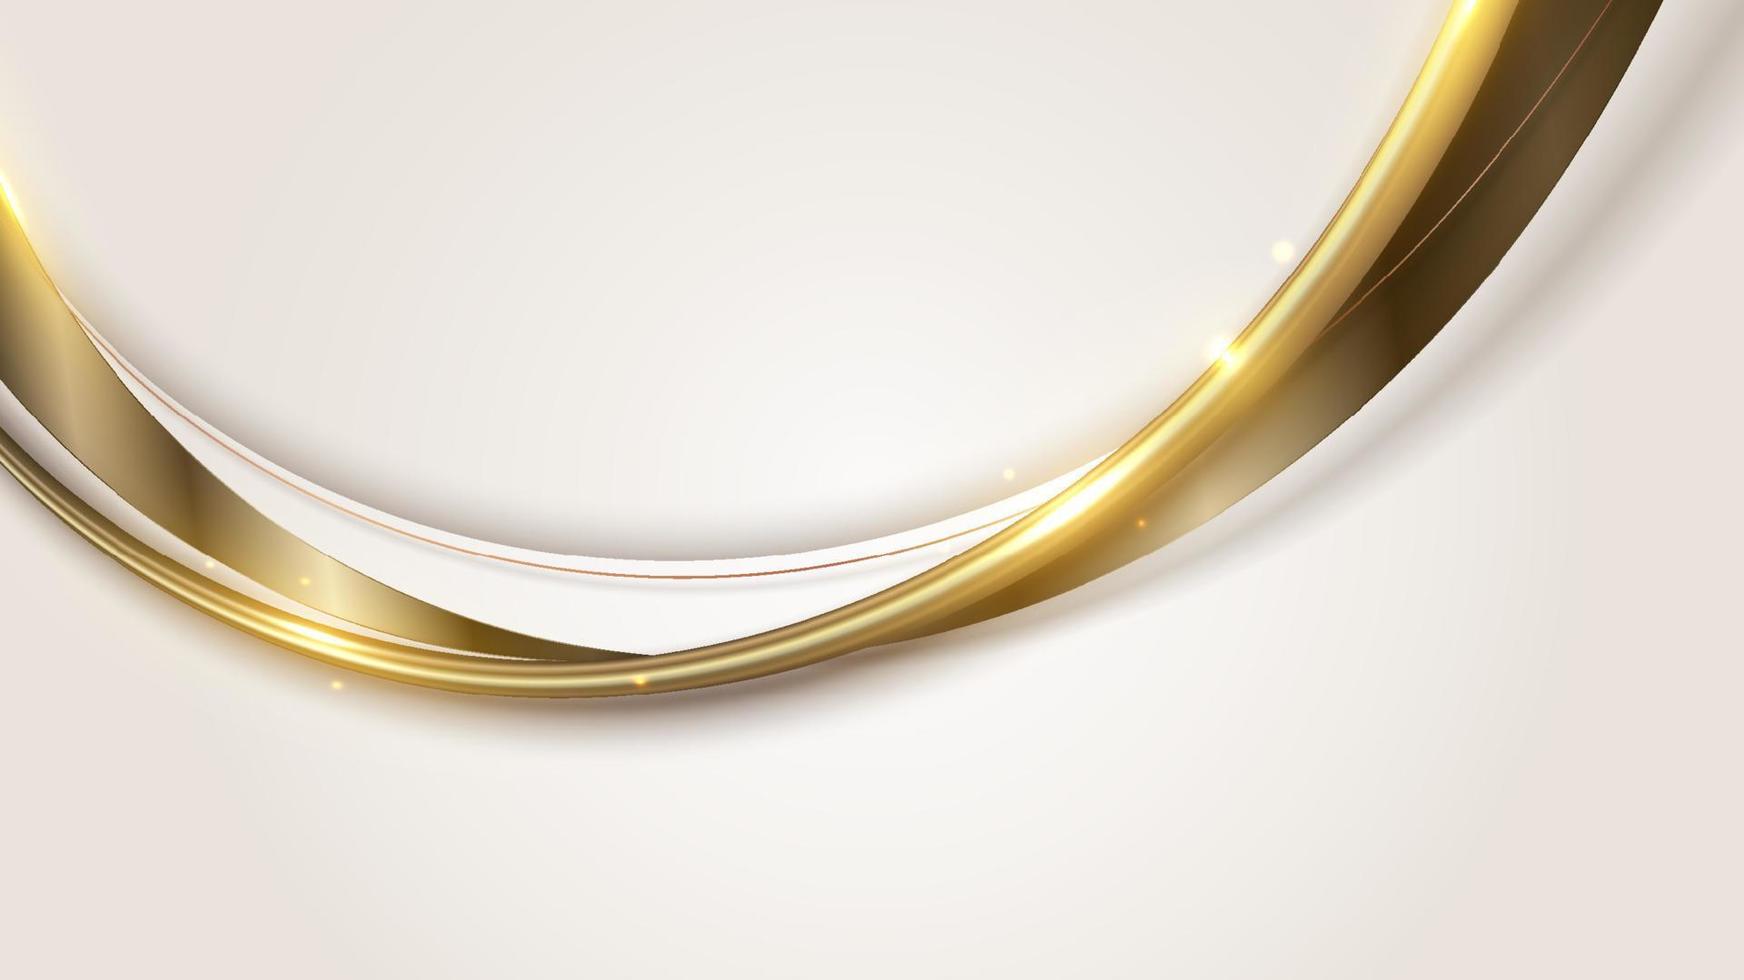 plantilla elegante abstracta forma de curva blanca y marrón con líneas curvas doradas 3d redondeadas e iluminación que brilla sobre un fondo limpio vector